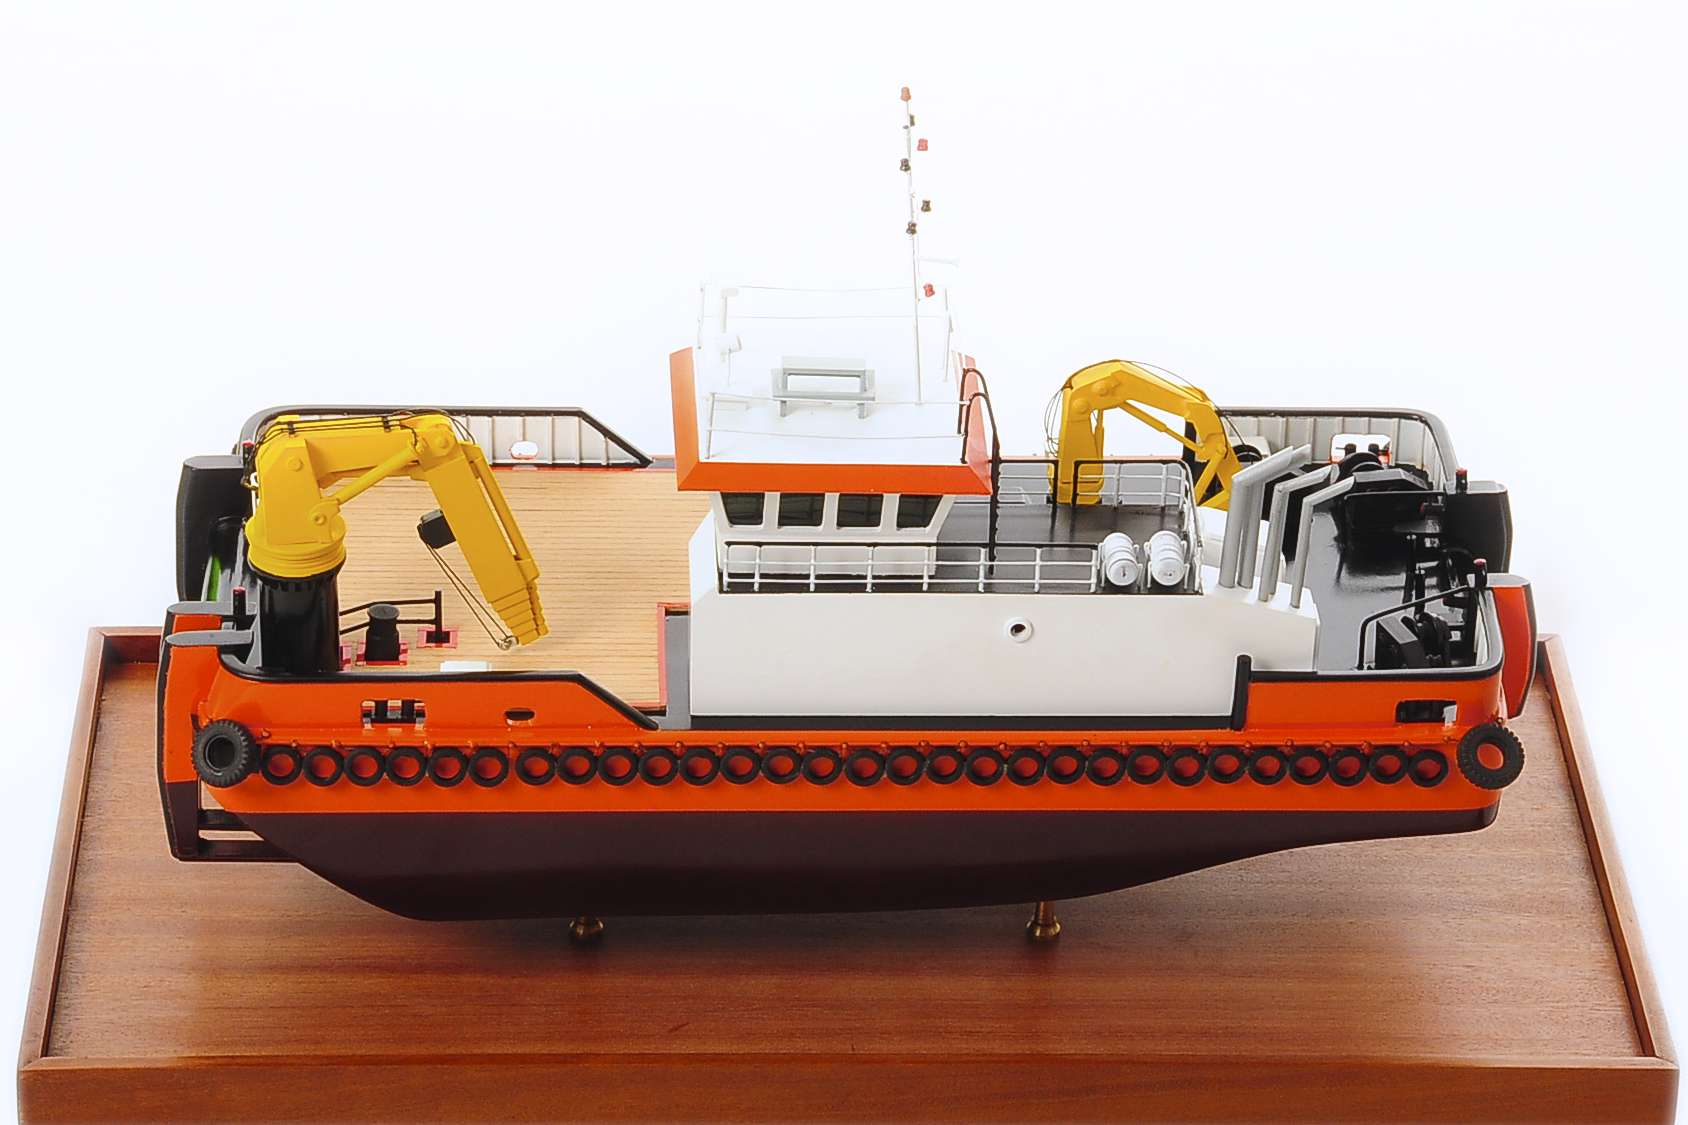 MV C Odyssey Work Vessel